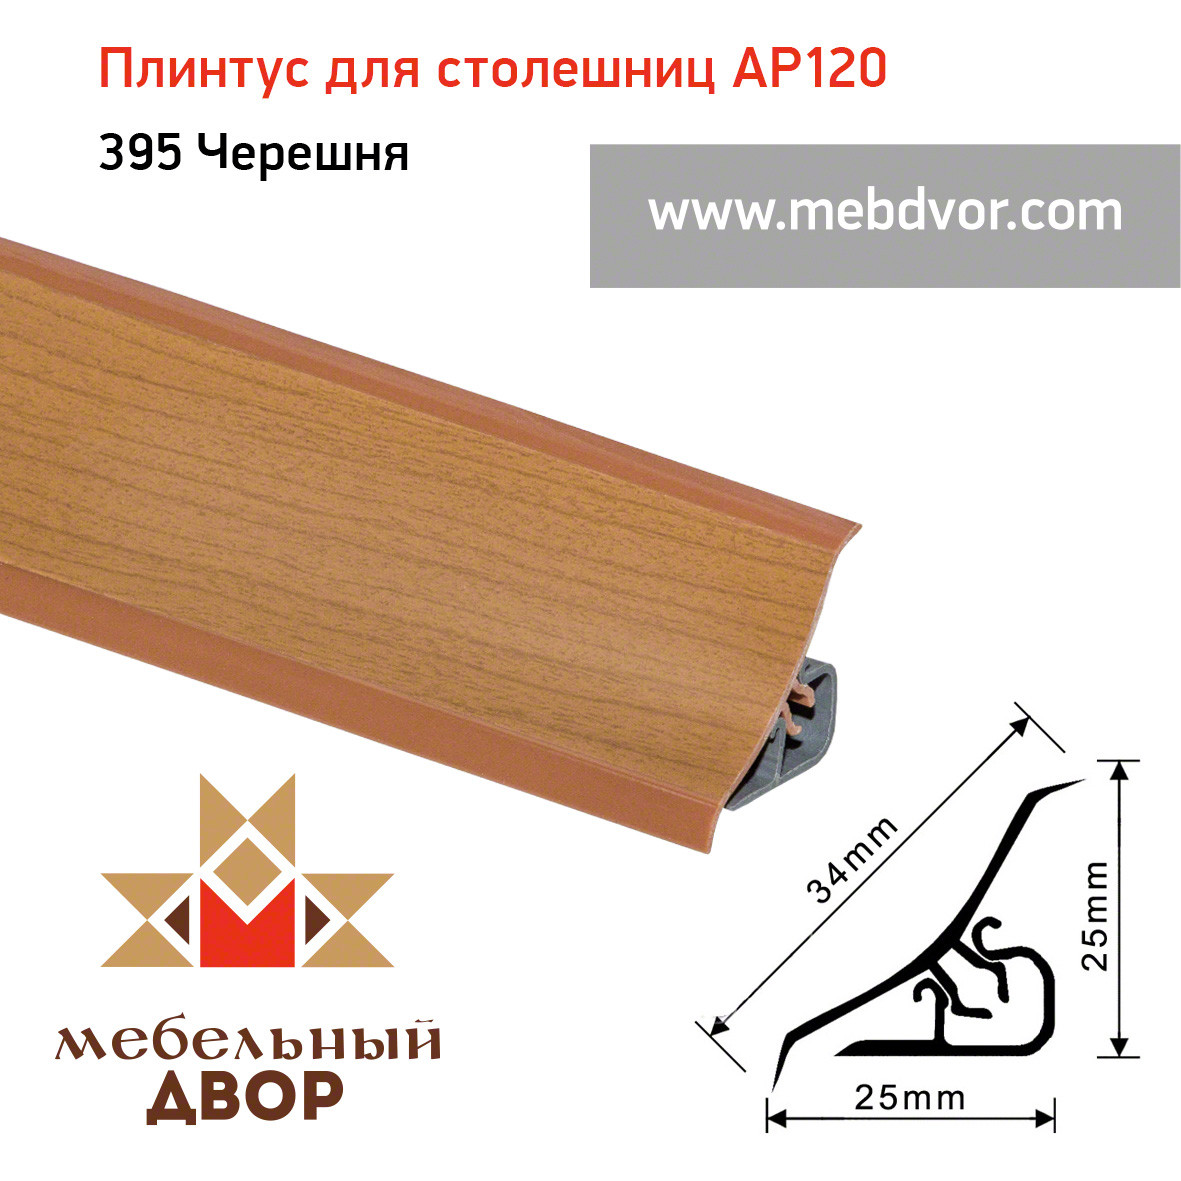 Плинтус для столешниц AP120 (395_Черешня), 3000 mm